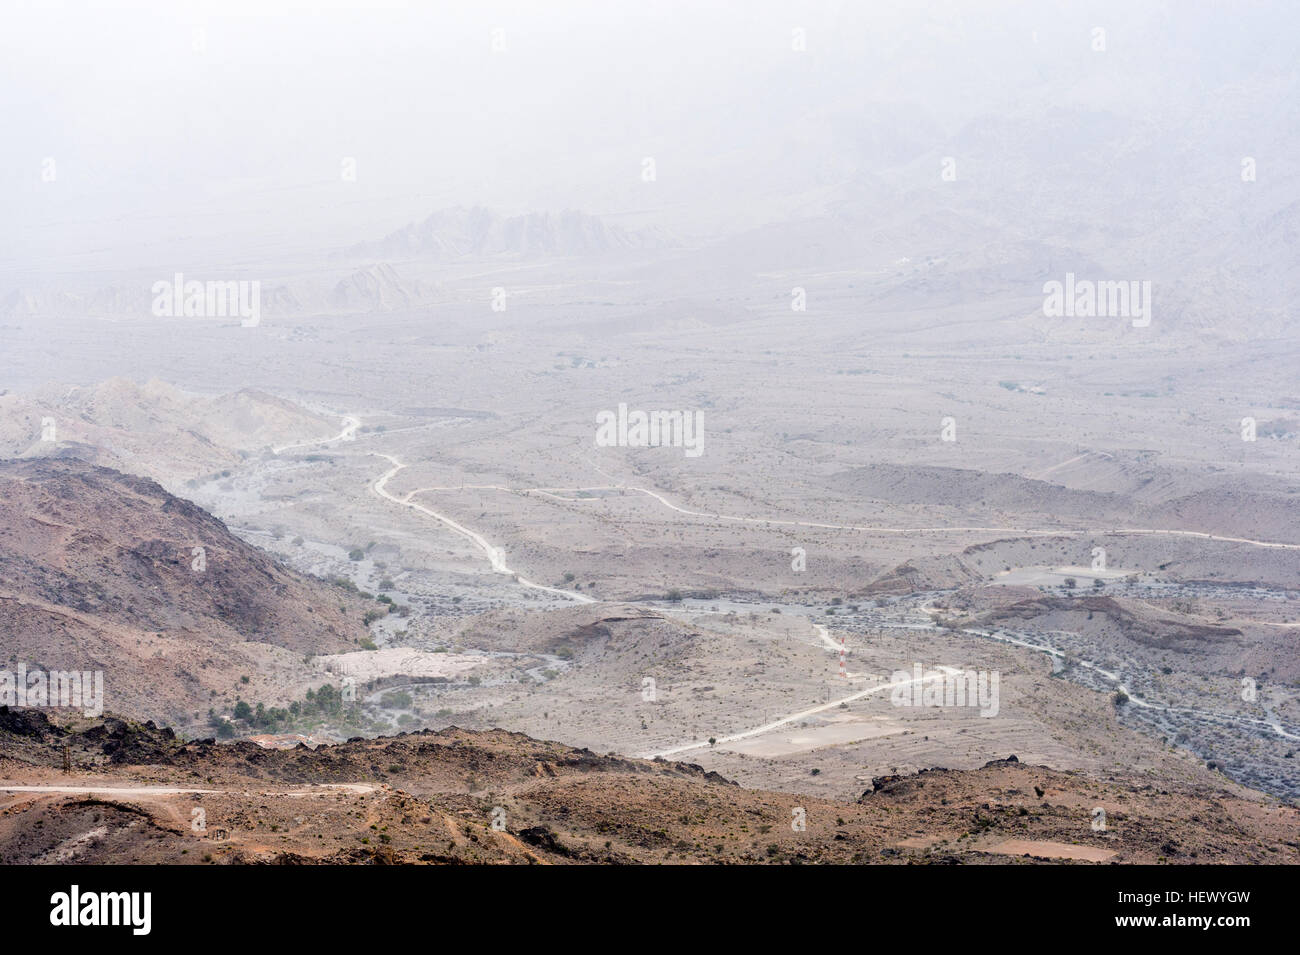 A dirt trail winds it's way through an arid desert valley. Stock Photo